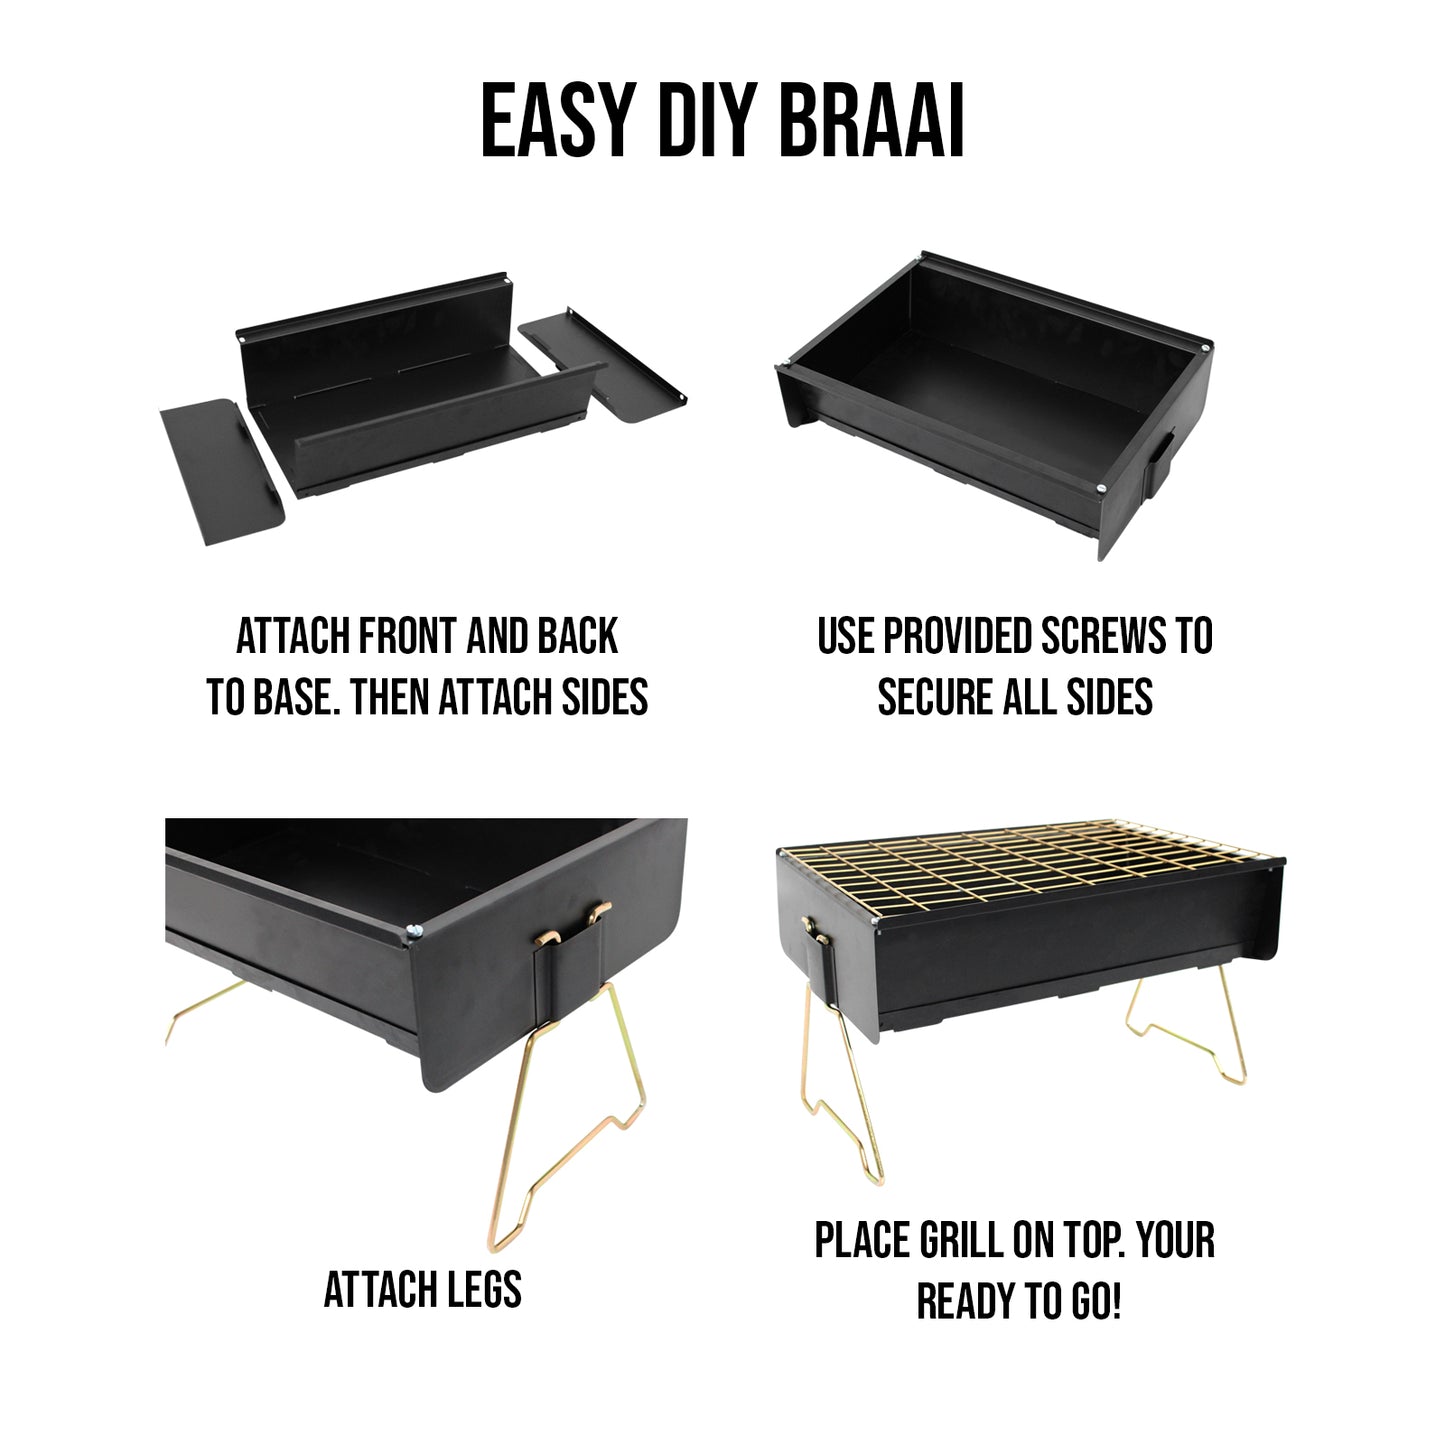 How to Assemble DIY Braai